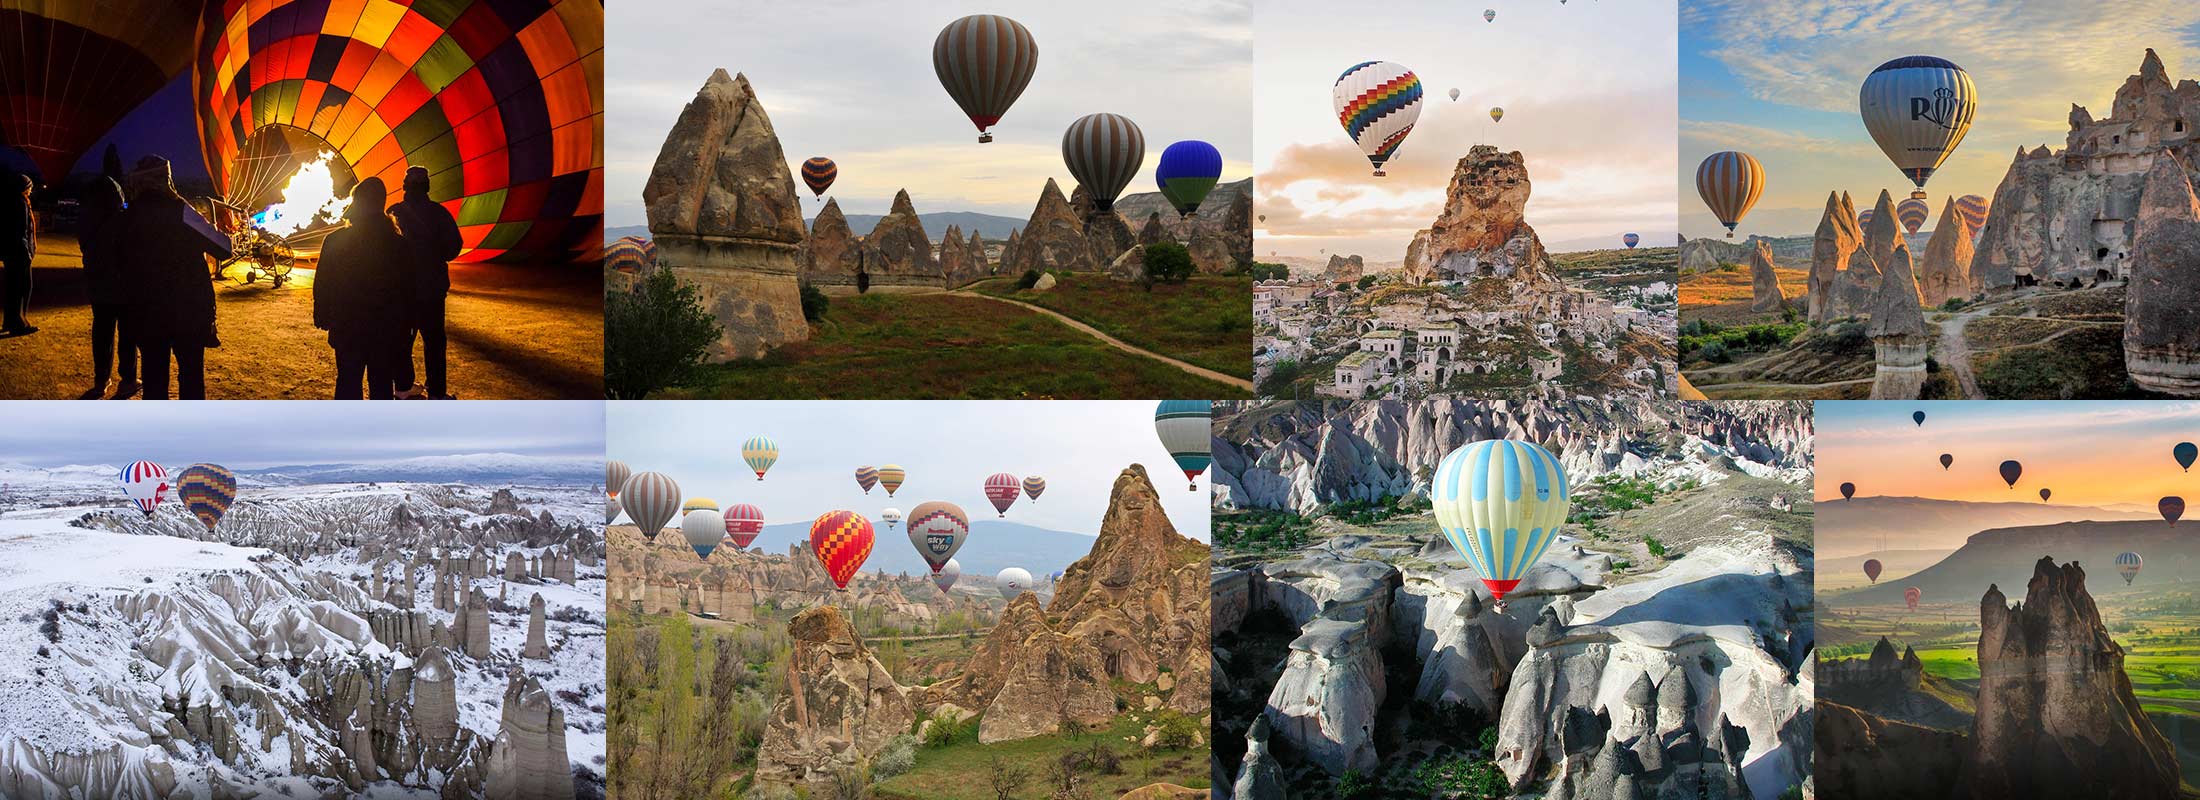 cappadocia-hot-air-balloon-tour